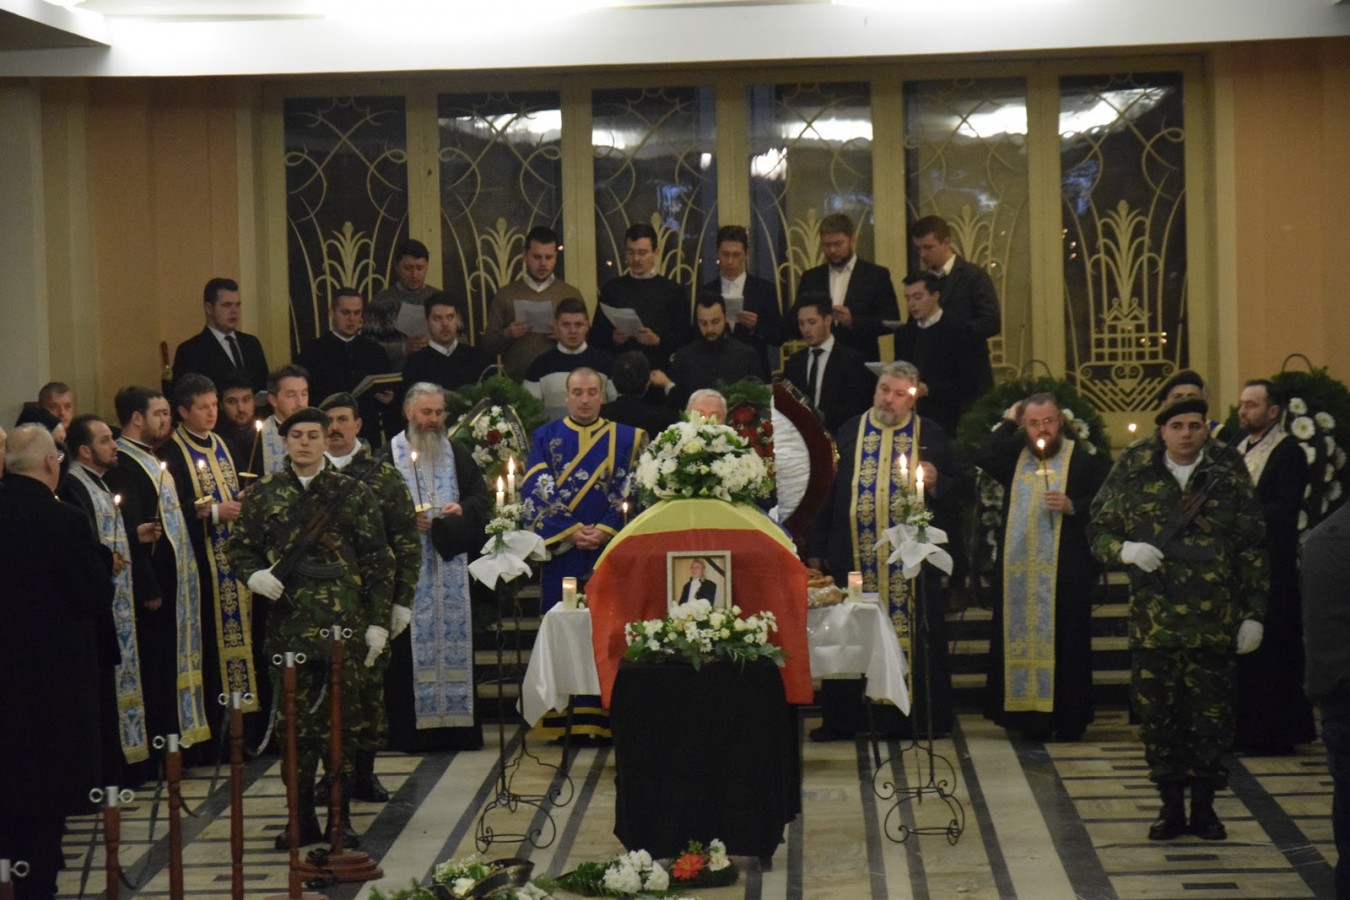 Academicianul Nicolae Edroiu, director al Institutului de Istorie „George Bariţiu”, înmormântat astăzi de Mitropolitul Clujului